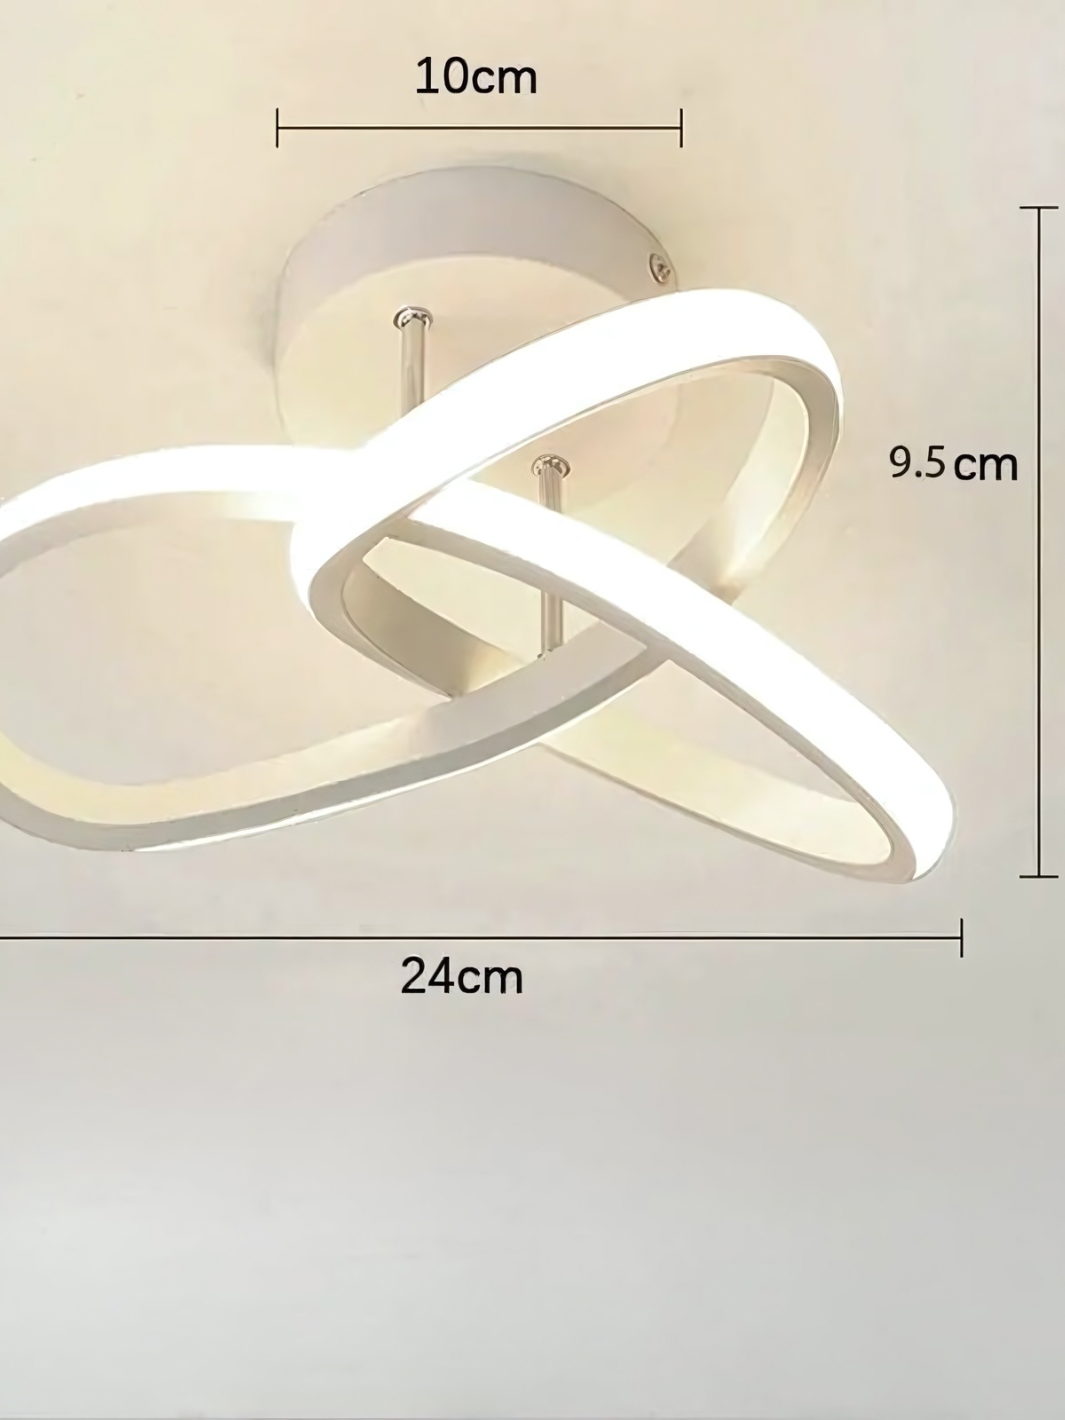 Plafonnier LED Moderne<br>ÉclatDesign